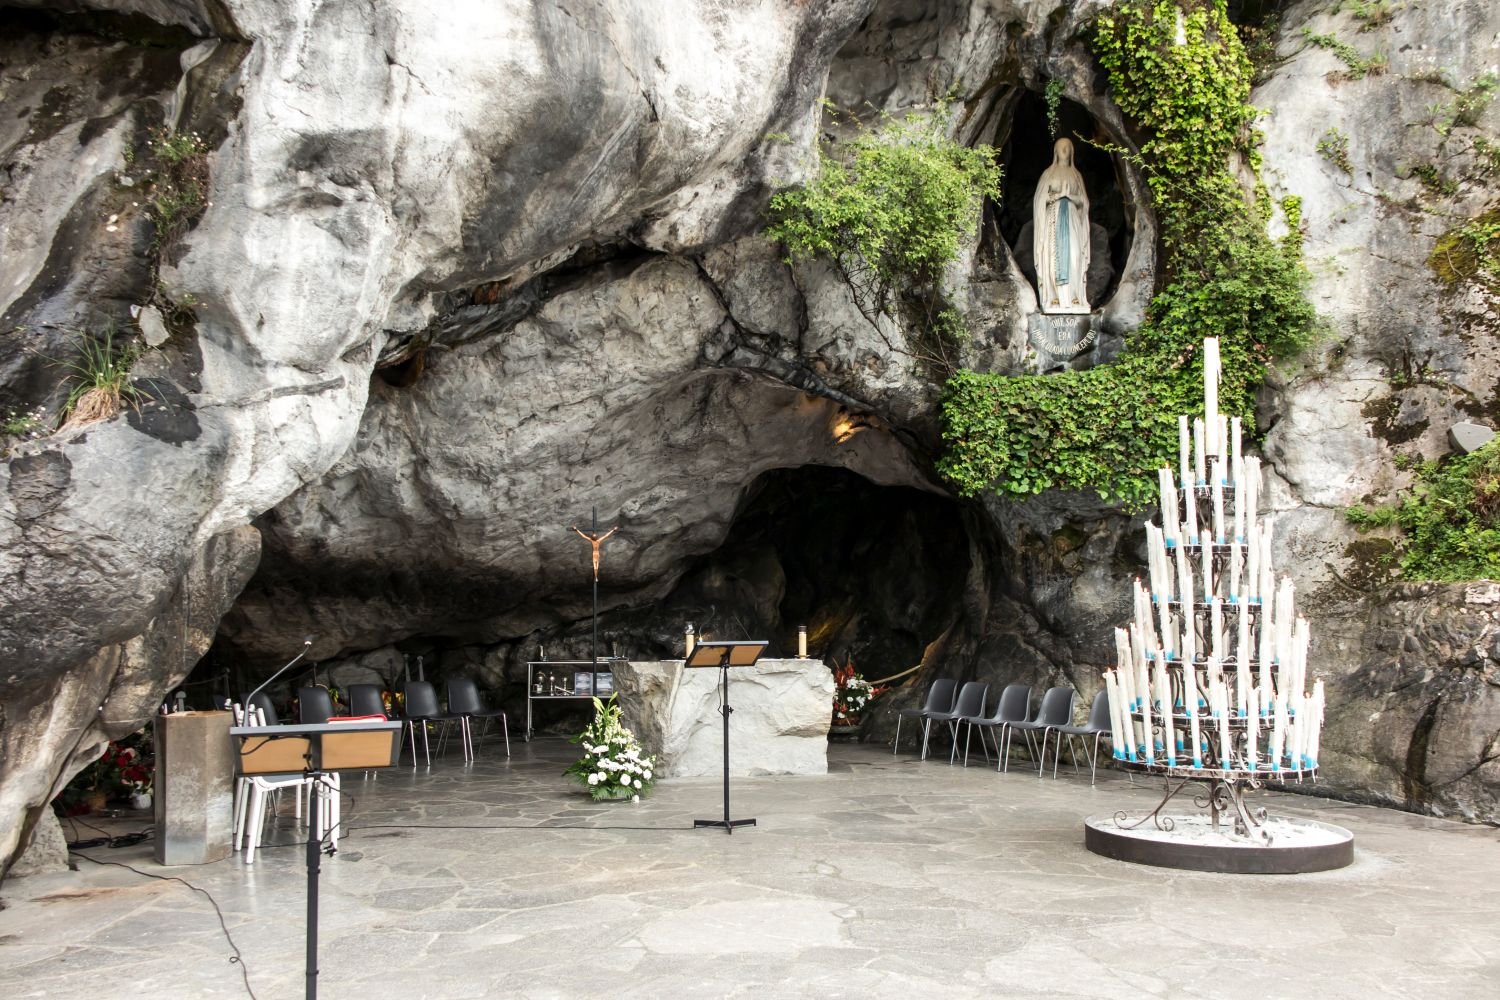 ''Notre région est la meilleure'' : parce qu'on y trouve de nombreuses répliques de la grotte de Lourdes 